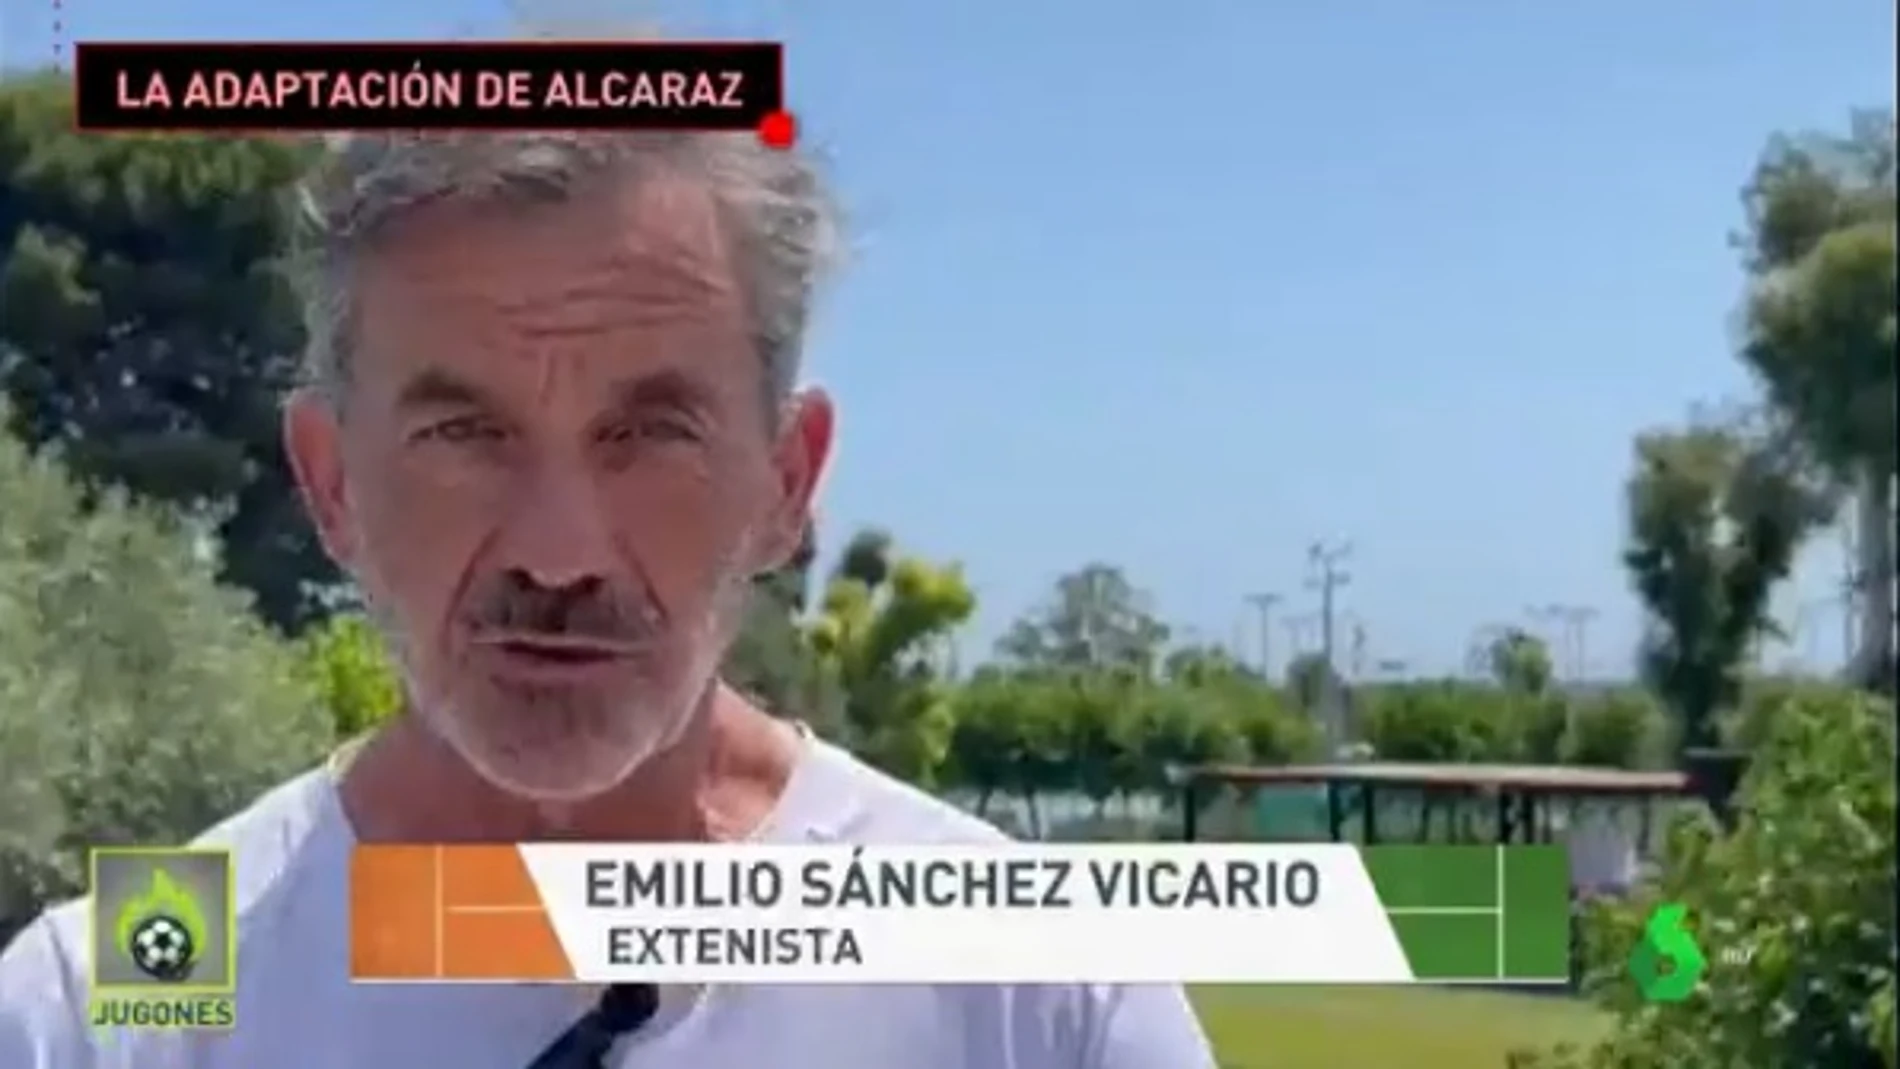 Emilio Sánchez Vicario